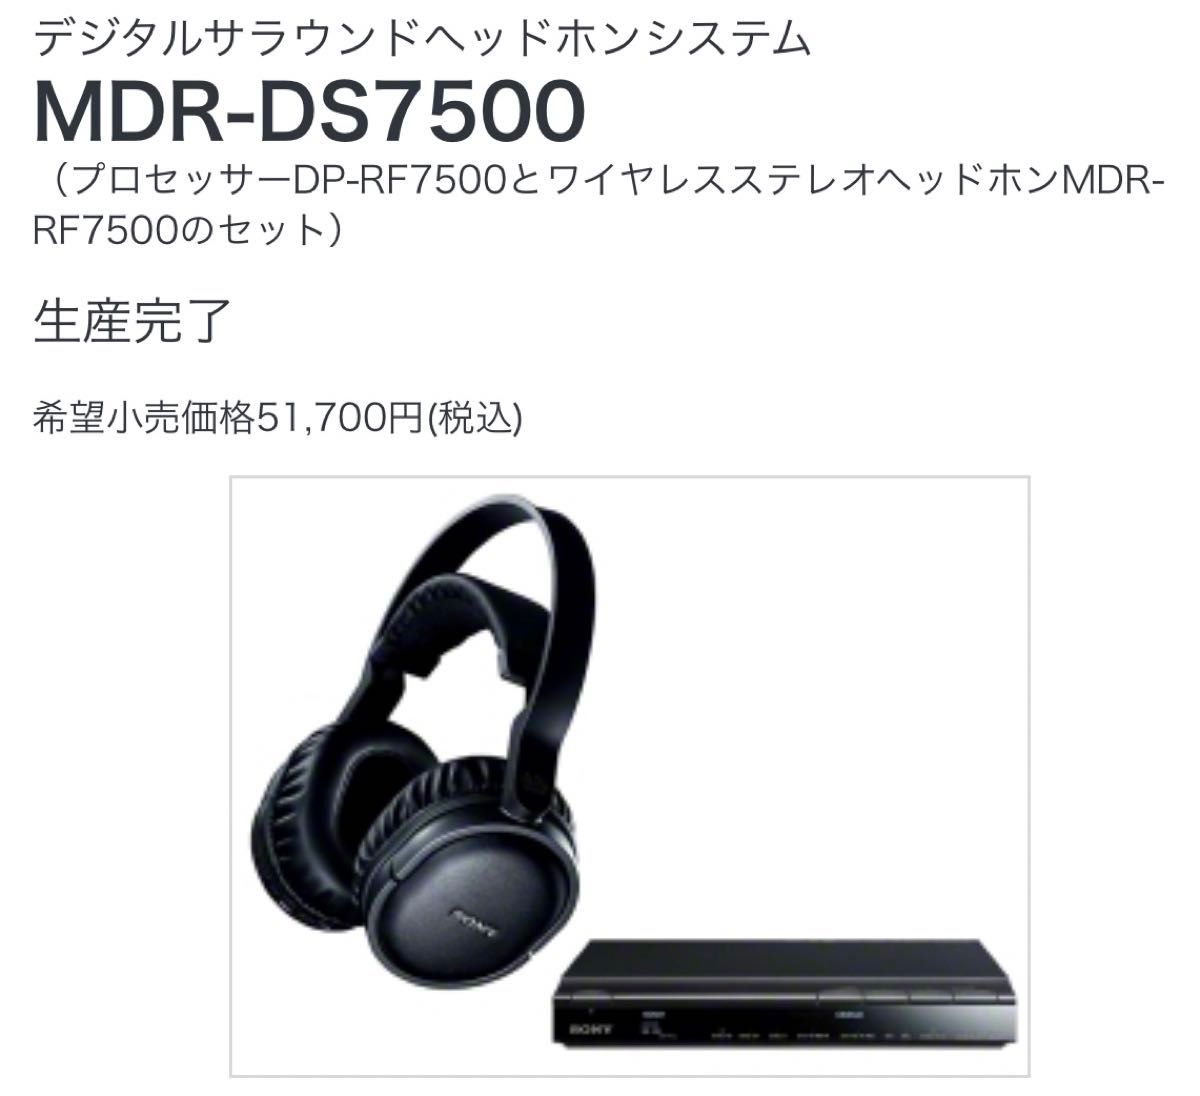 SONY 7.1chデジタルサラウンドヘッドホン MDR-DS7500ジャンク - ヘッドホン